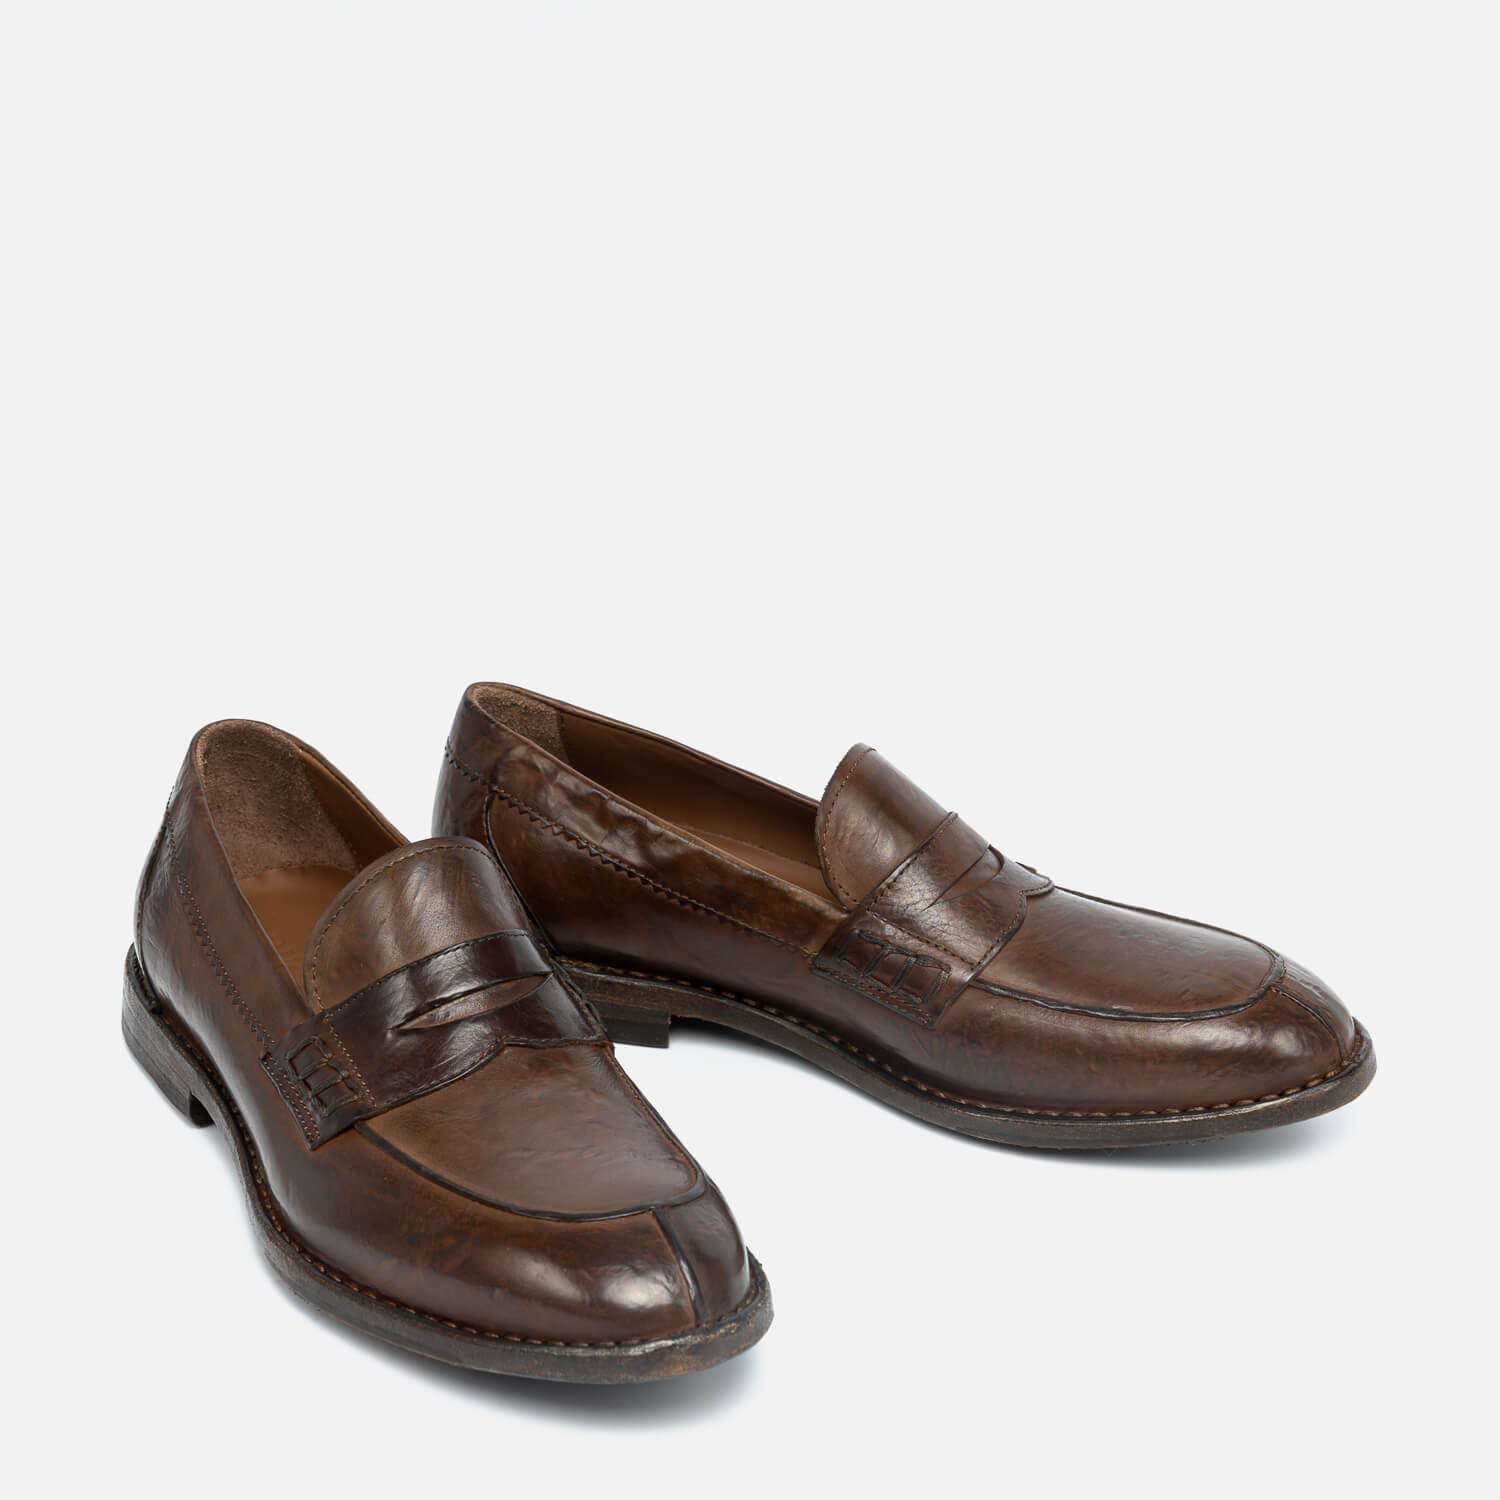 Biagio | Model 2718 loafers tan